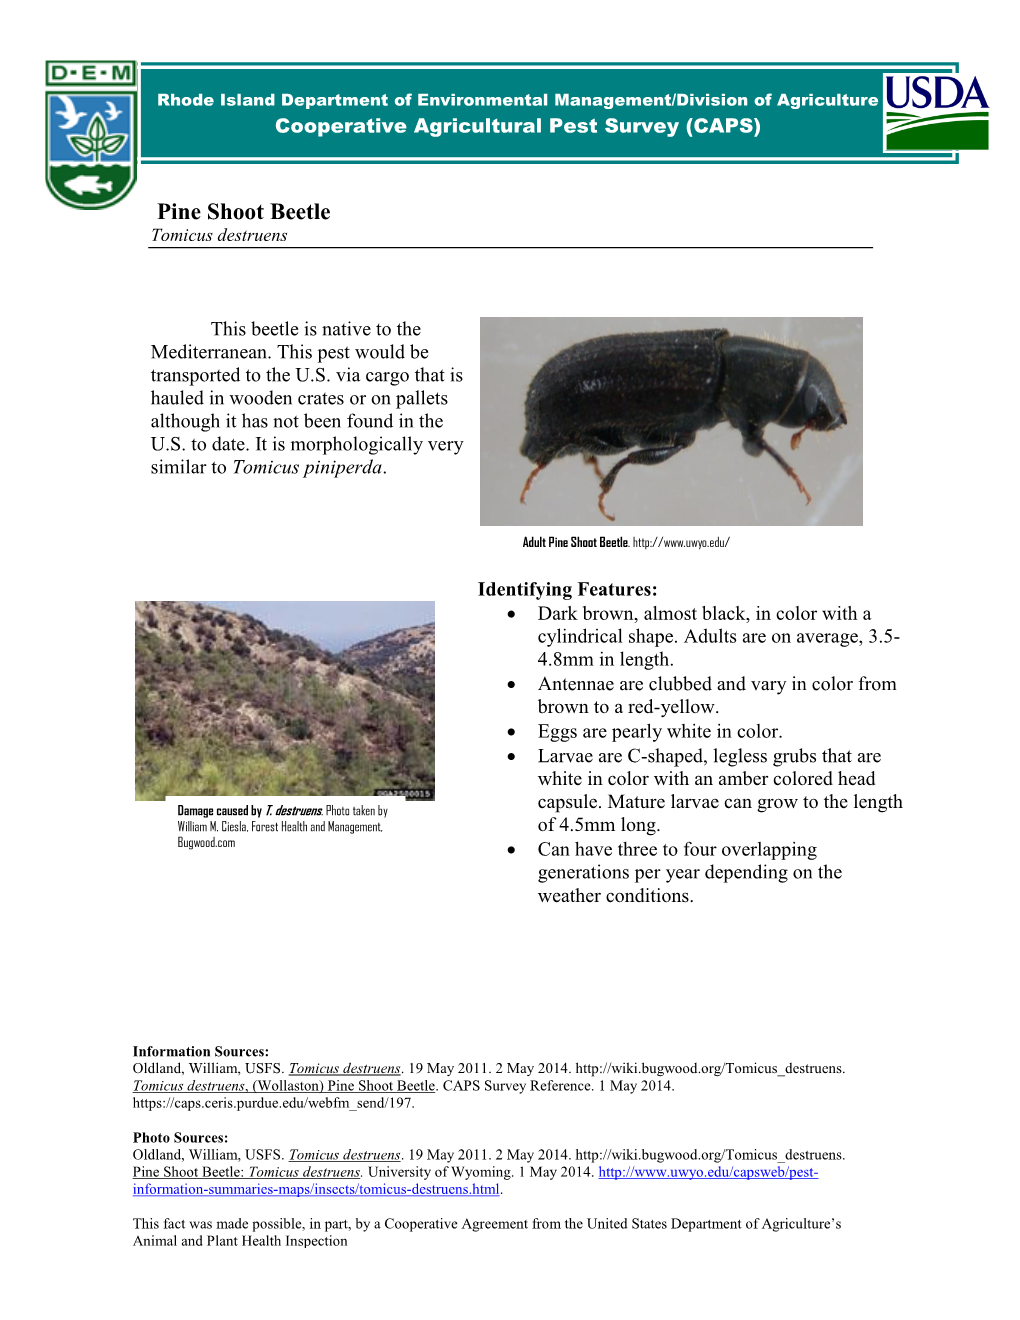 Pine Shoot Beetle Tomicus Destruens